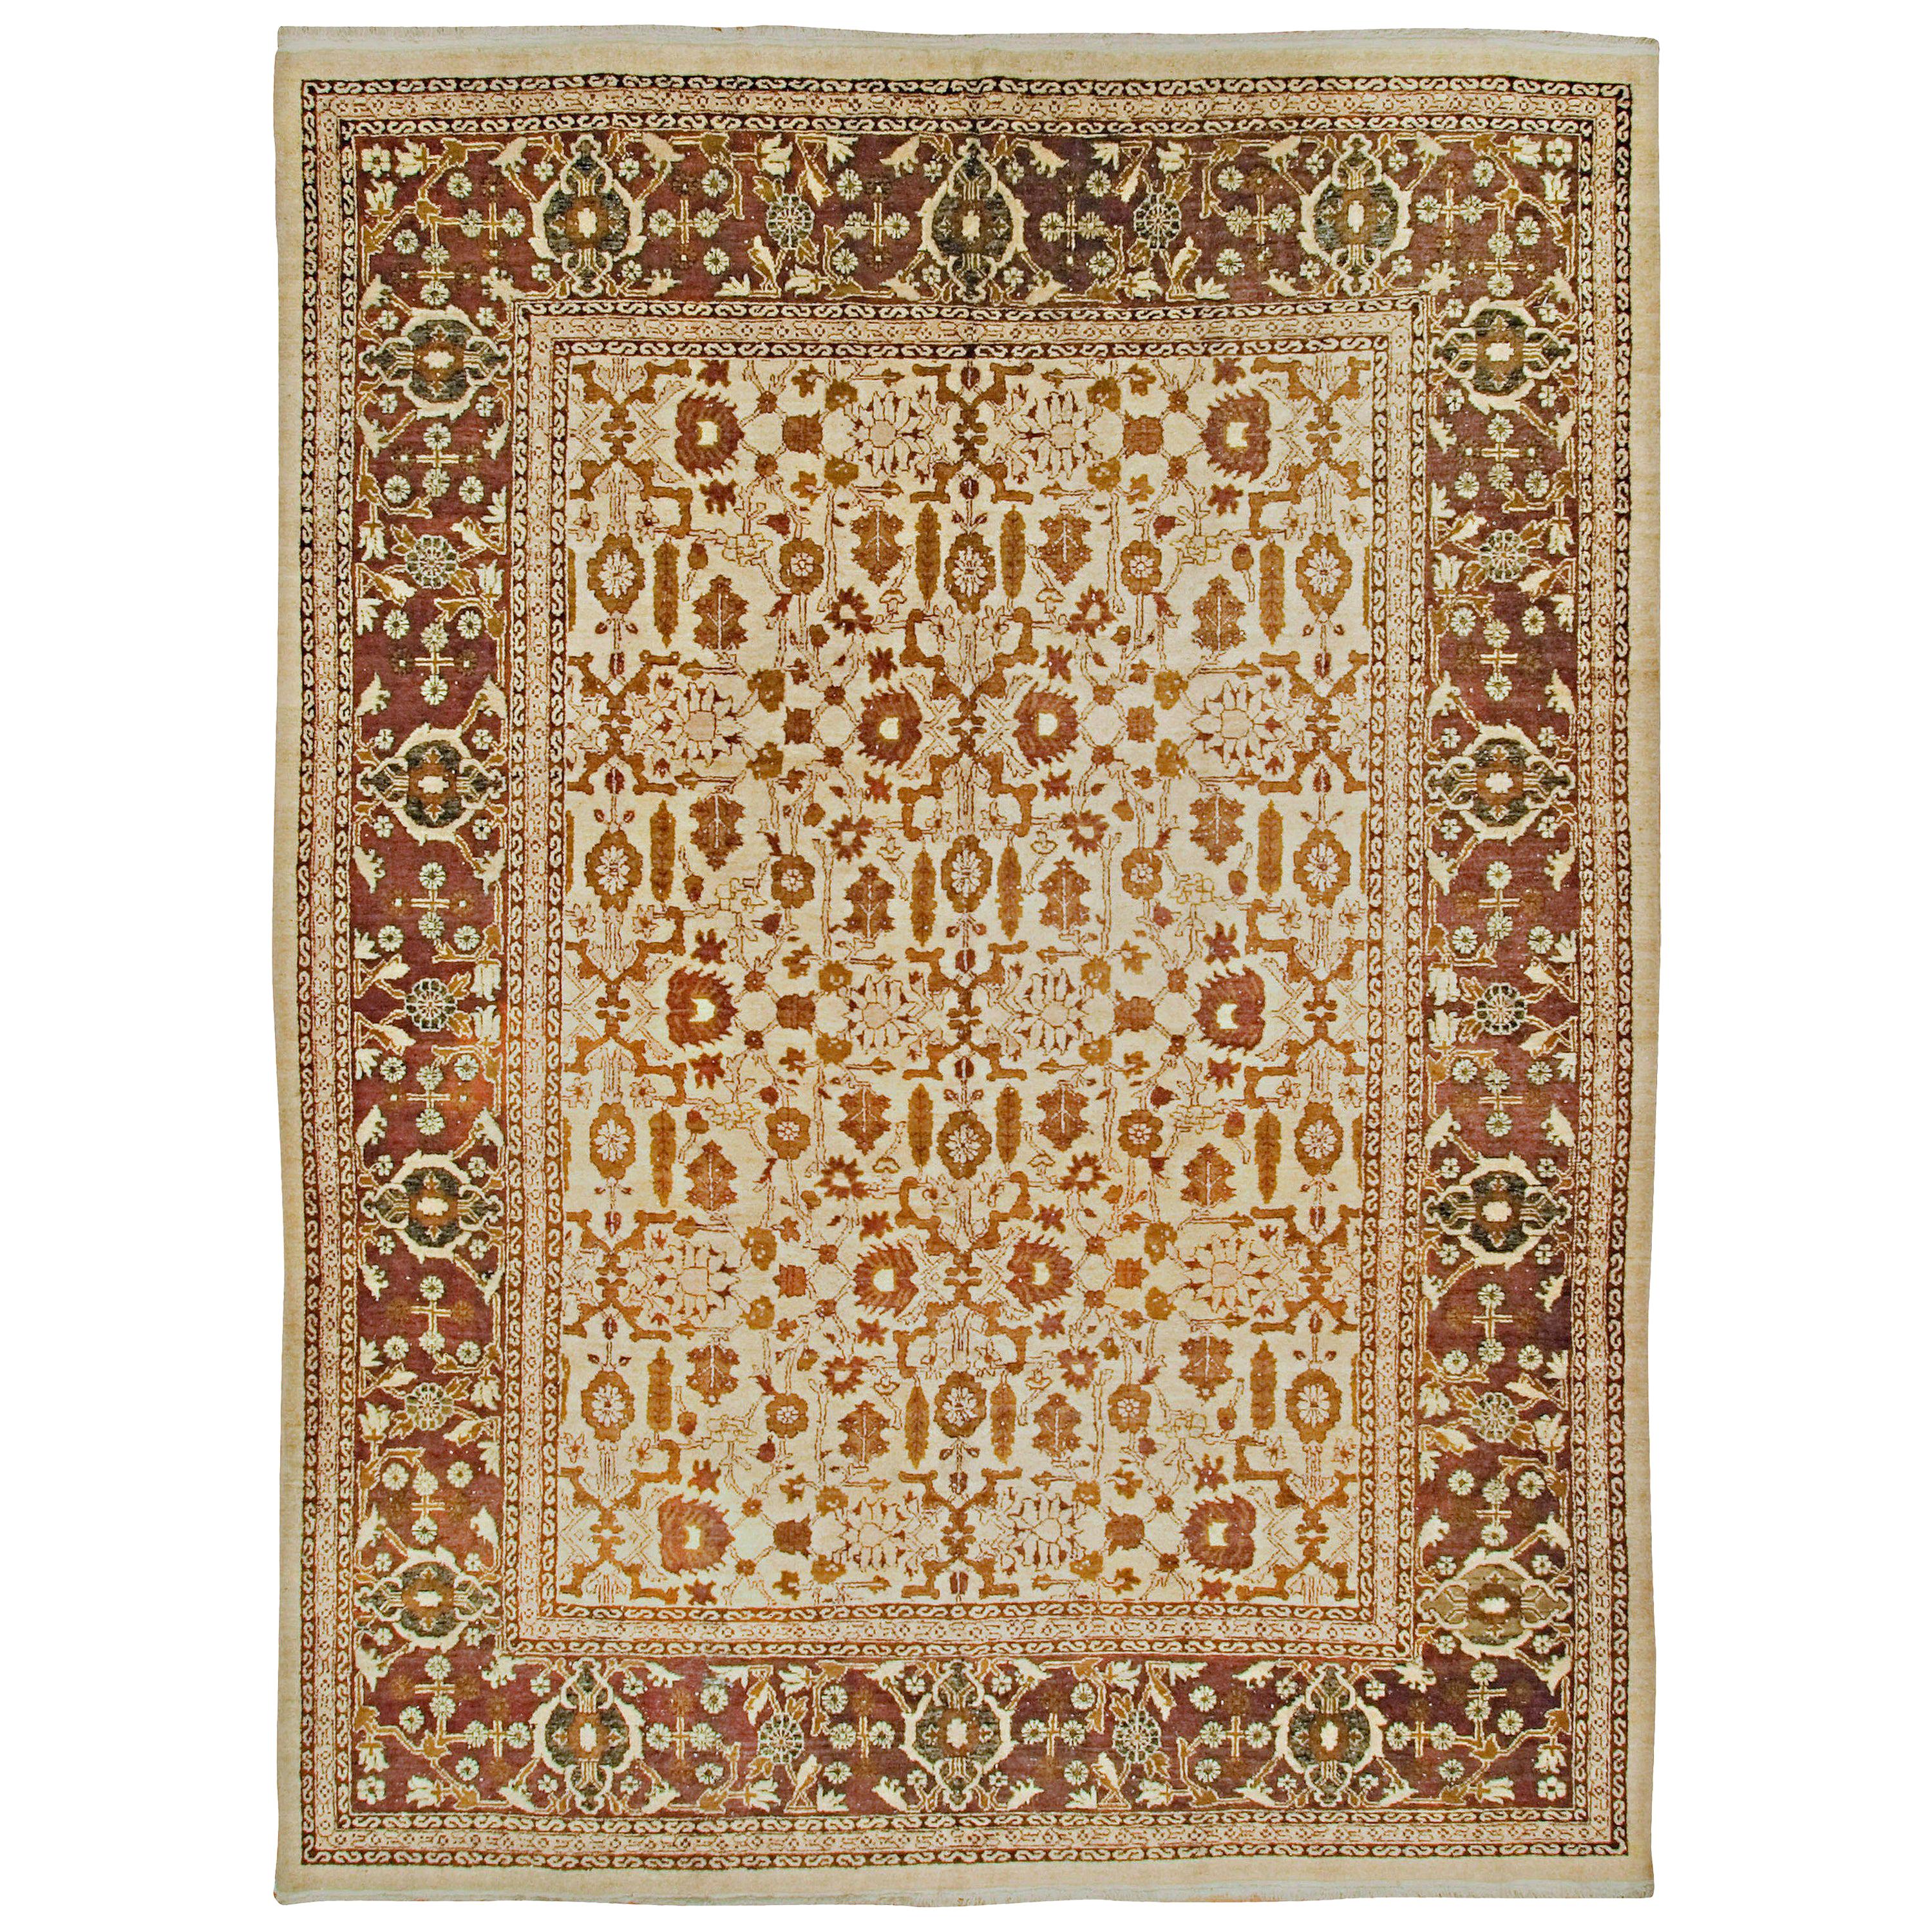 Antiker indischer Agra-Teppich, um 1900  9' x 12'2 m